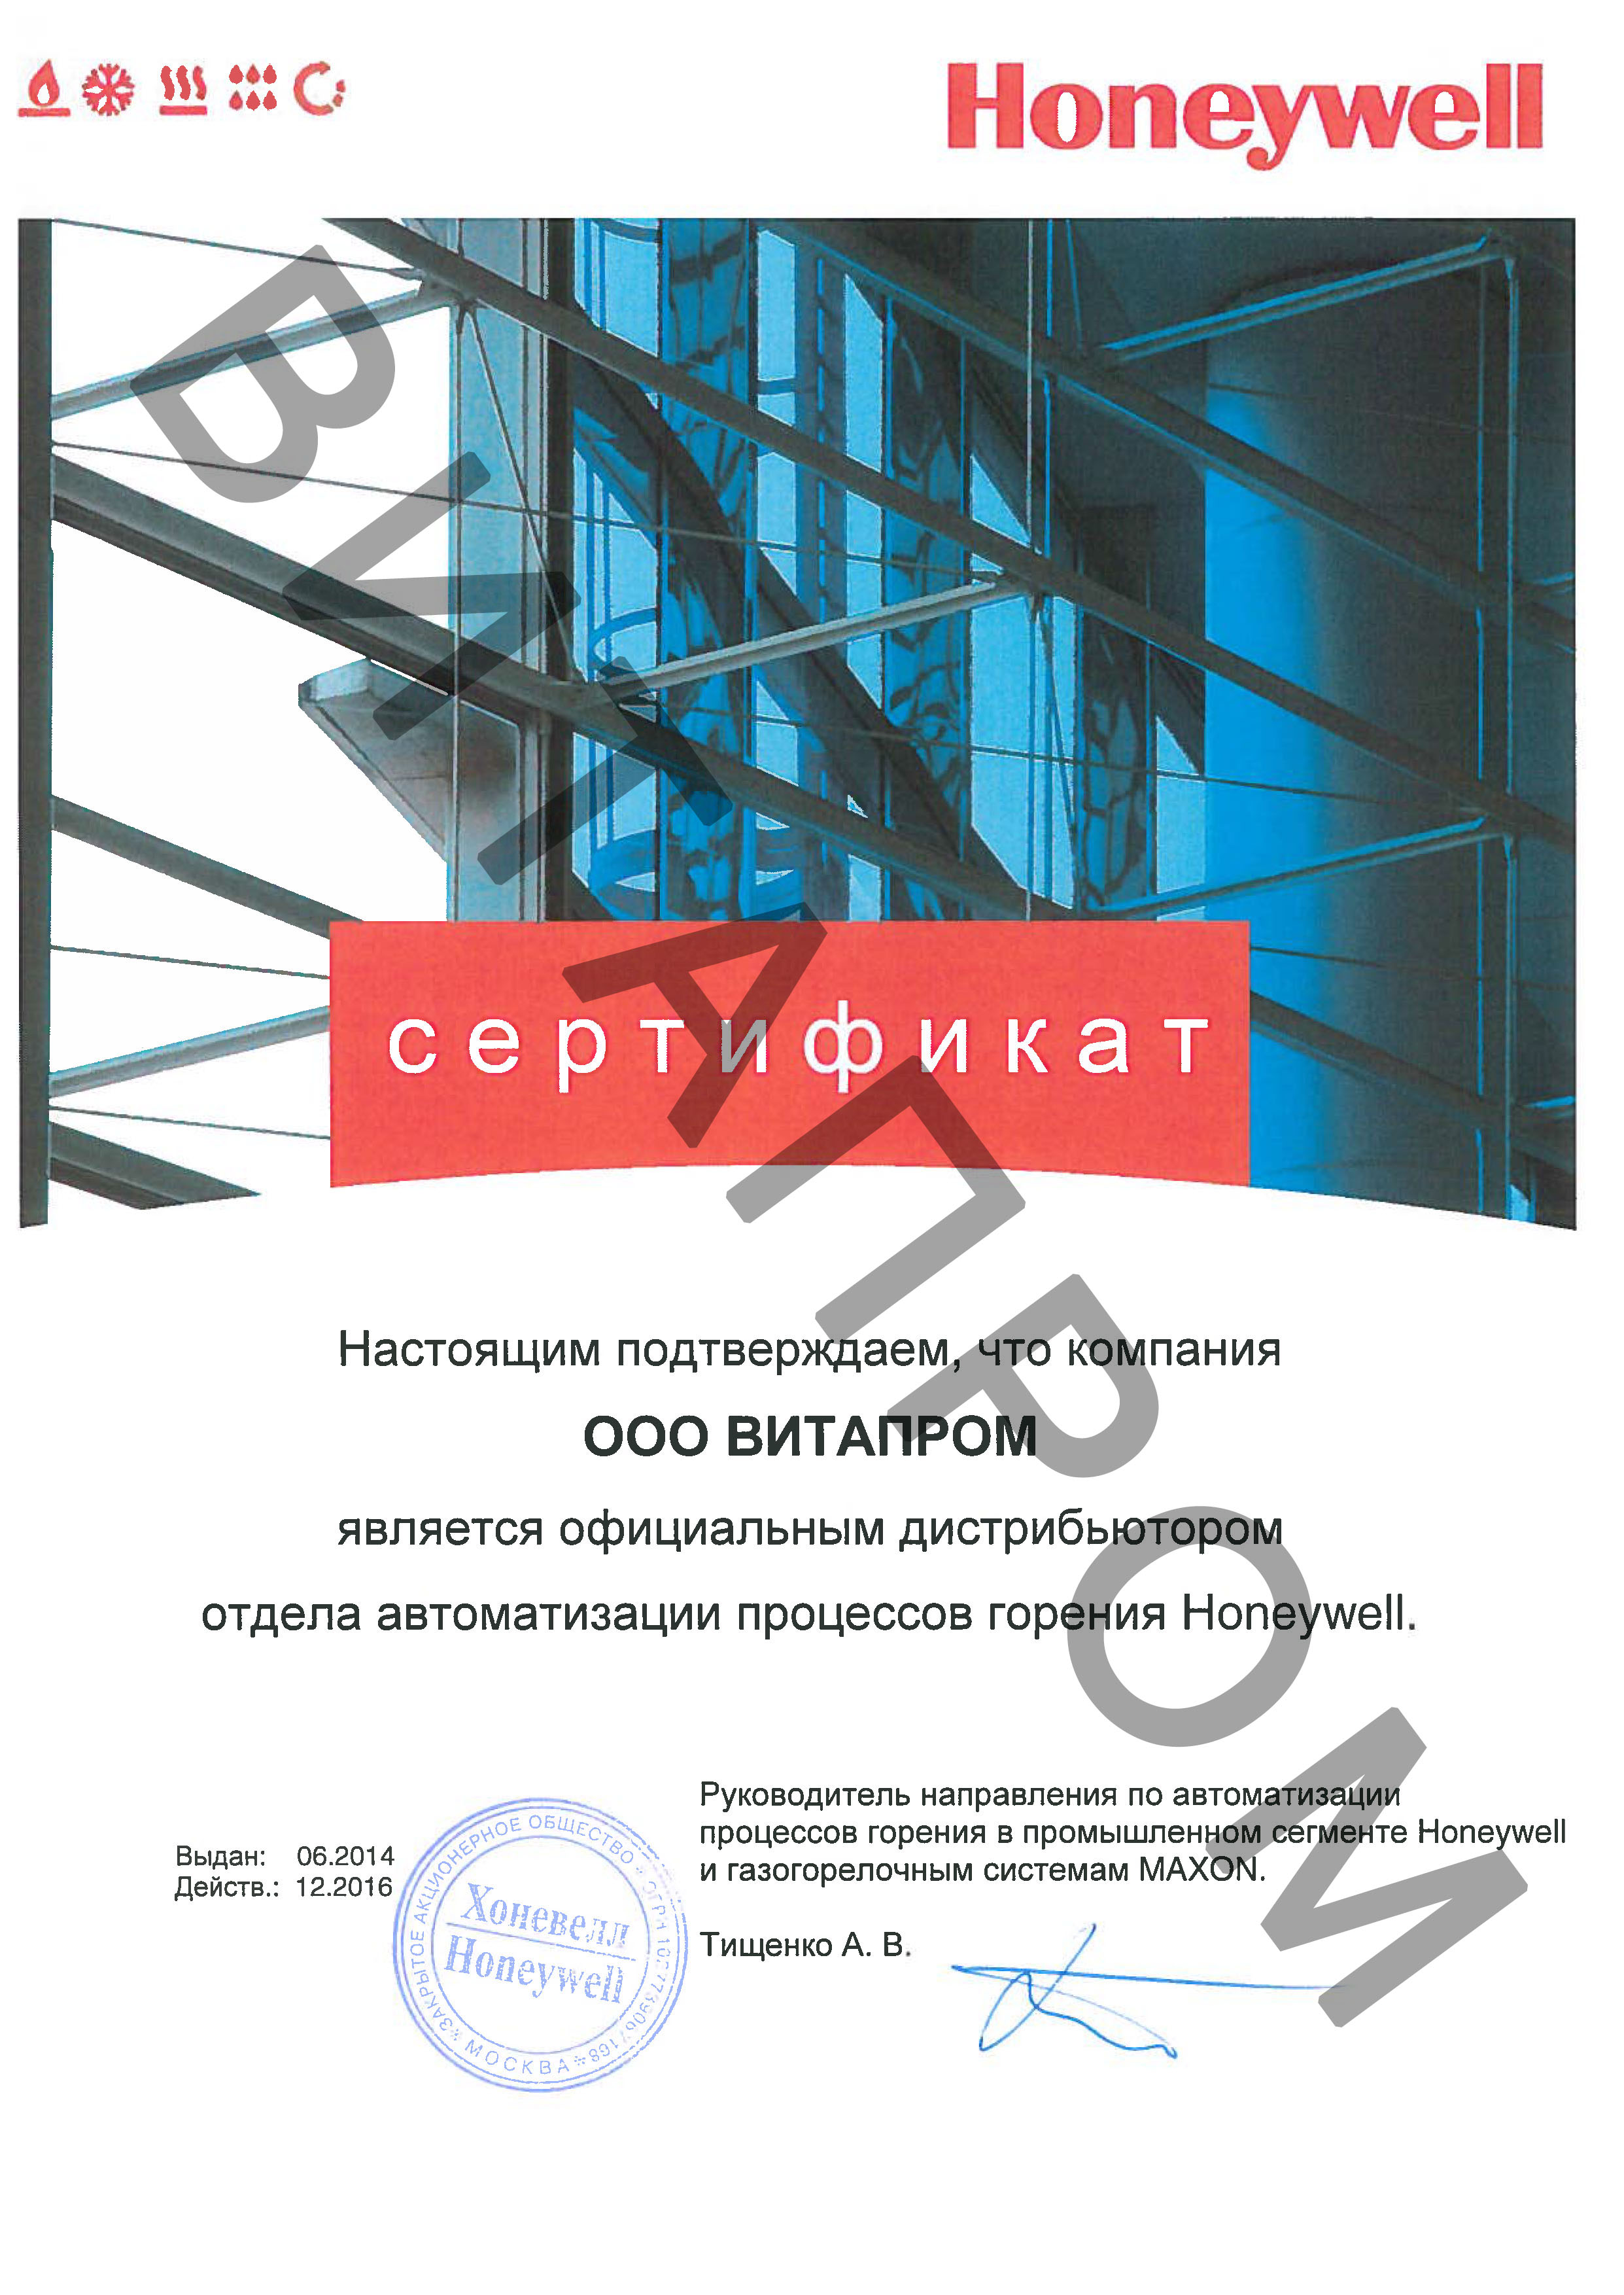 Сертификат дистрибьютора Honeywell 2016